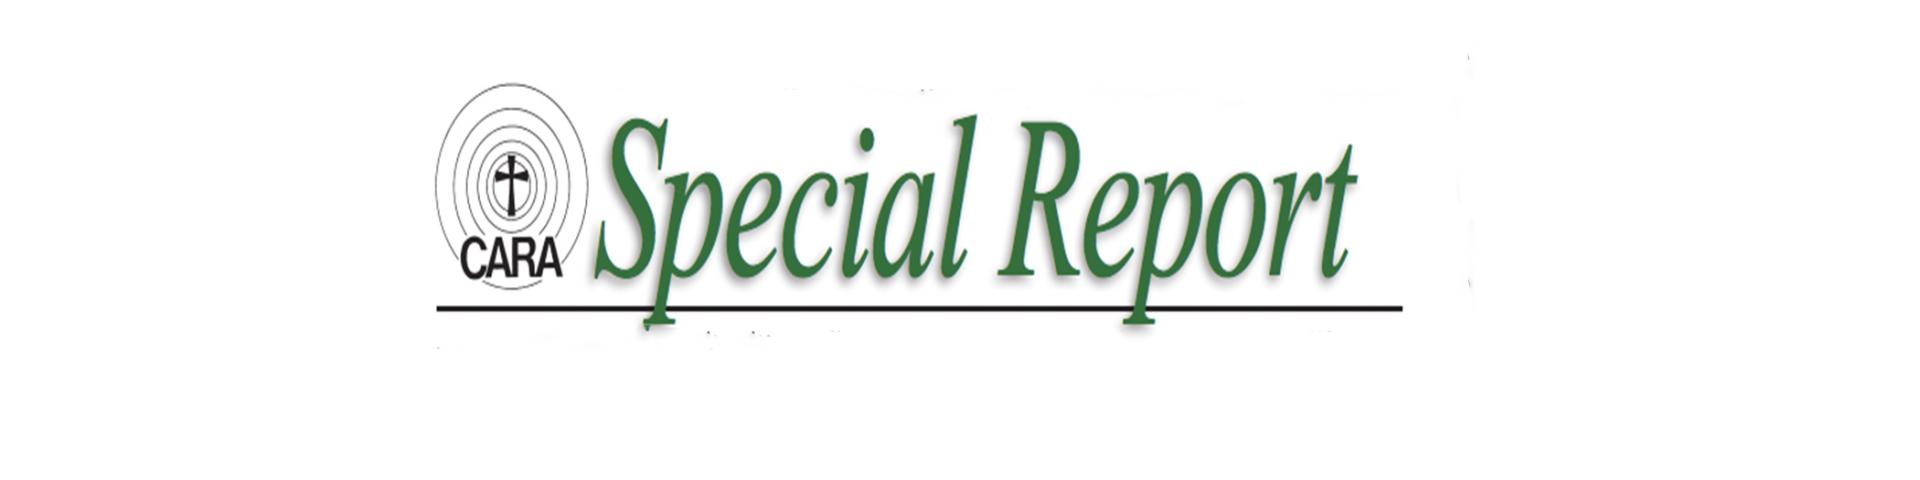 CARA Special Report Logo